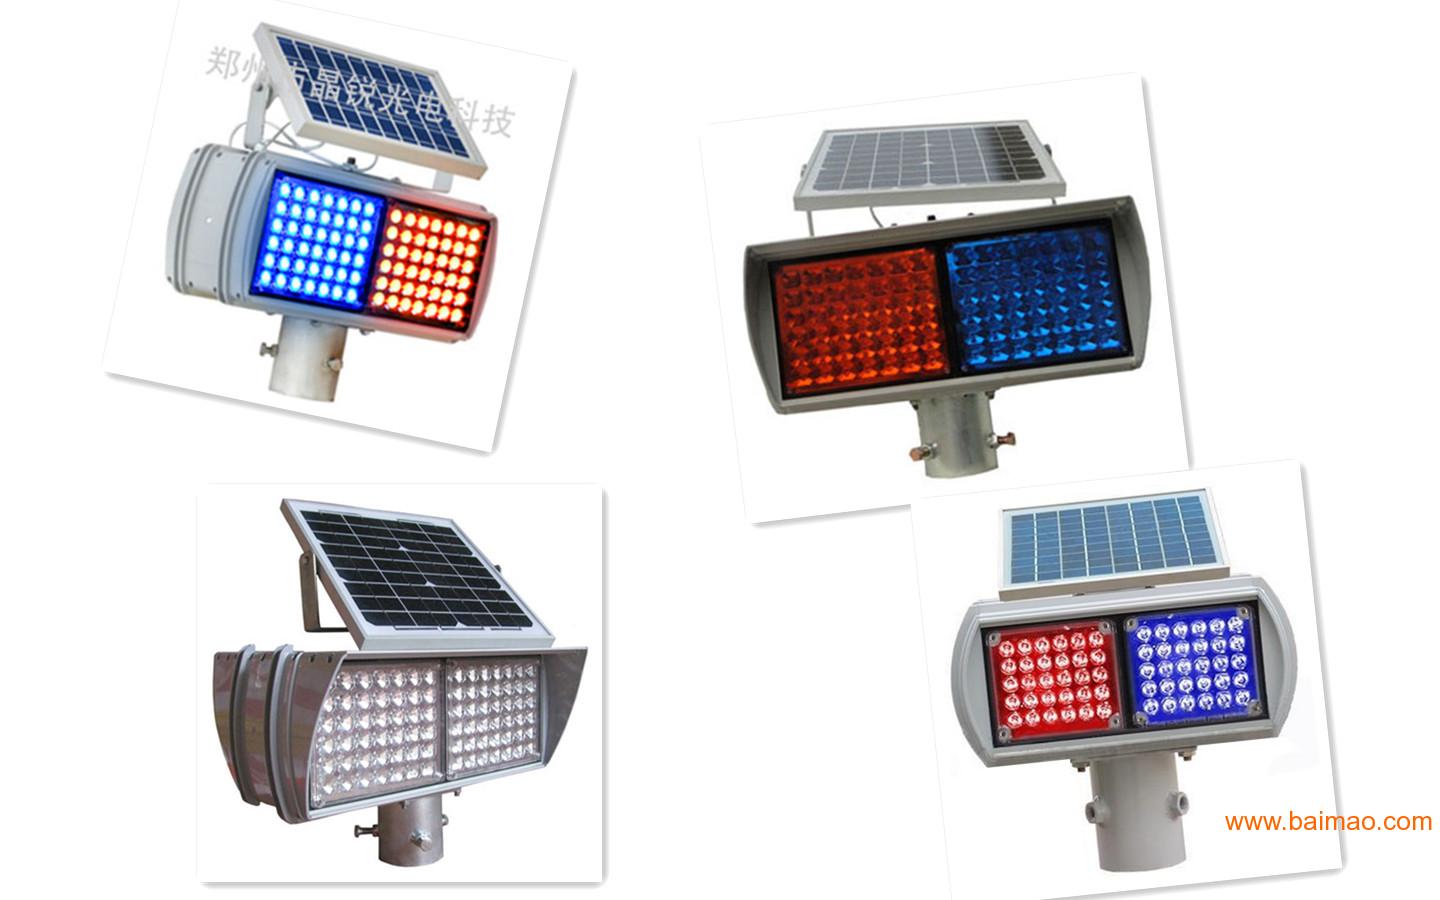 太阳能信号灯|广东珠海信号灯生产厂家|高质信号灯